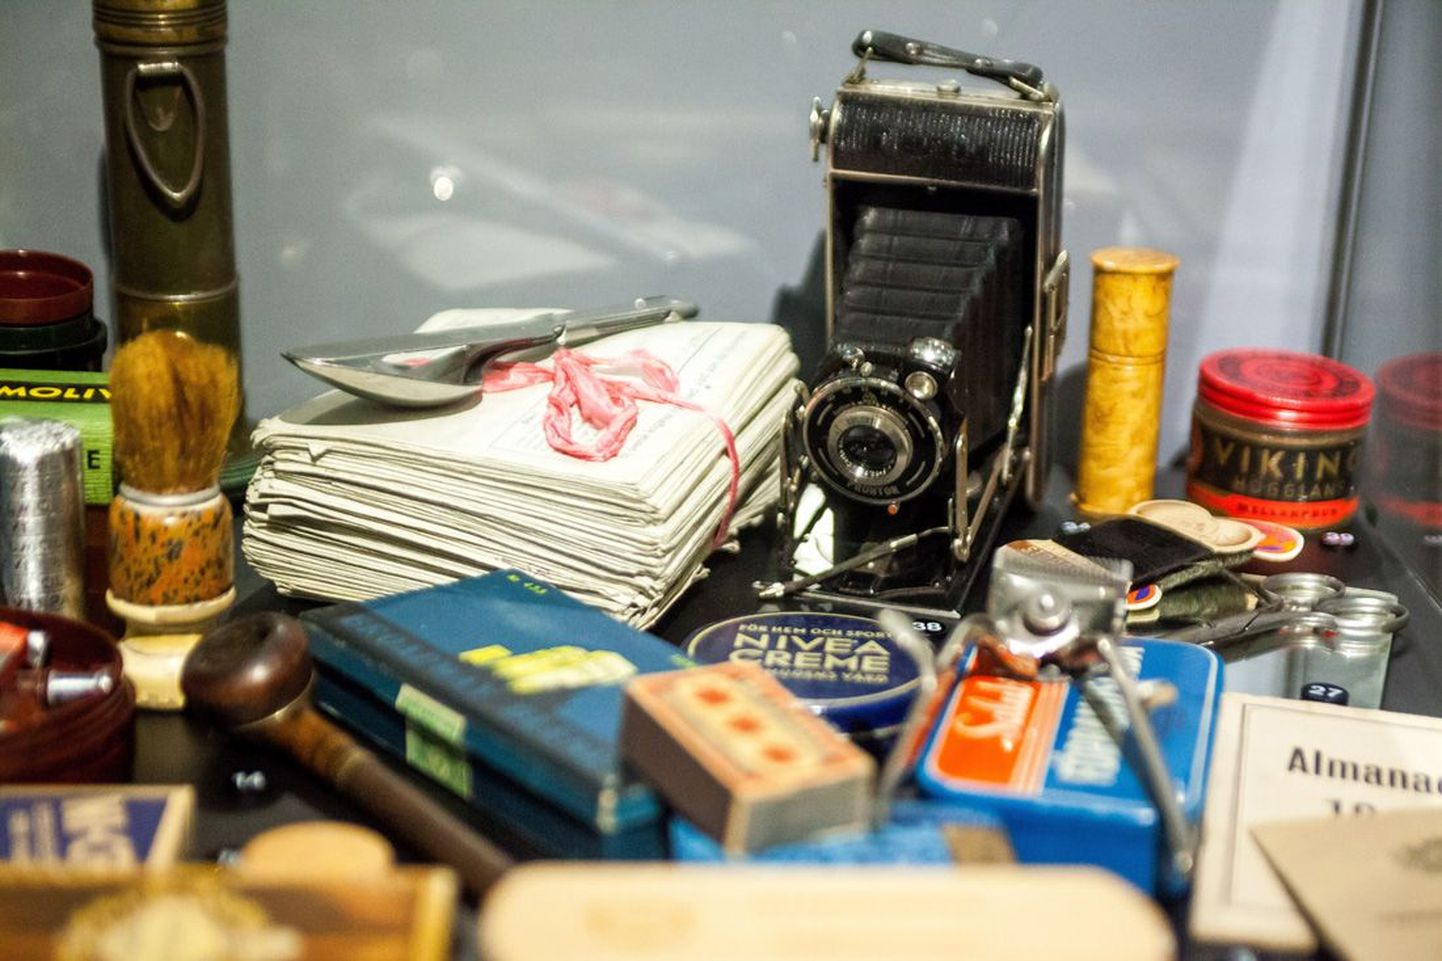 Mitte ainult Lucky Strike’i suitsud ja Coca-Cola pole tänapäevani tuttavad brändid, mida Viimsi näitusel kohtab, vaid vanade kirjade, fotoaparaadi, habemeajamispintsli ja kääride vahelt leiab ka Nivea kreem.